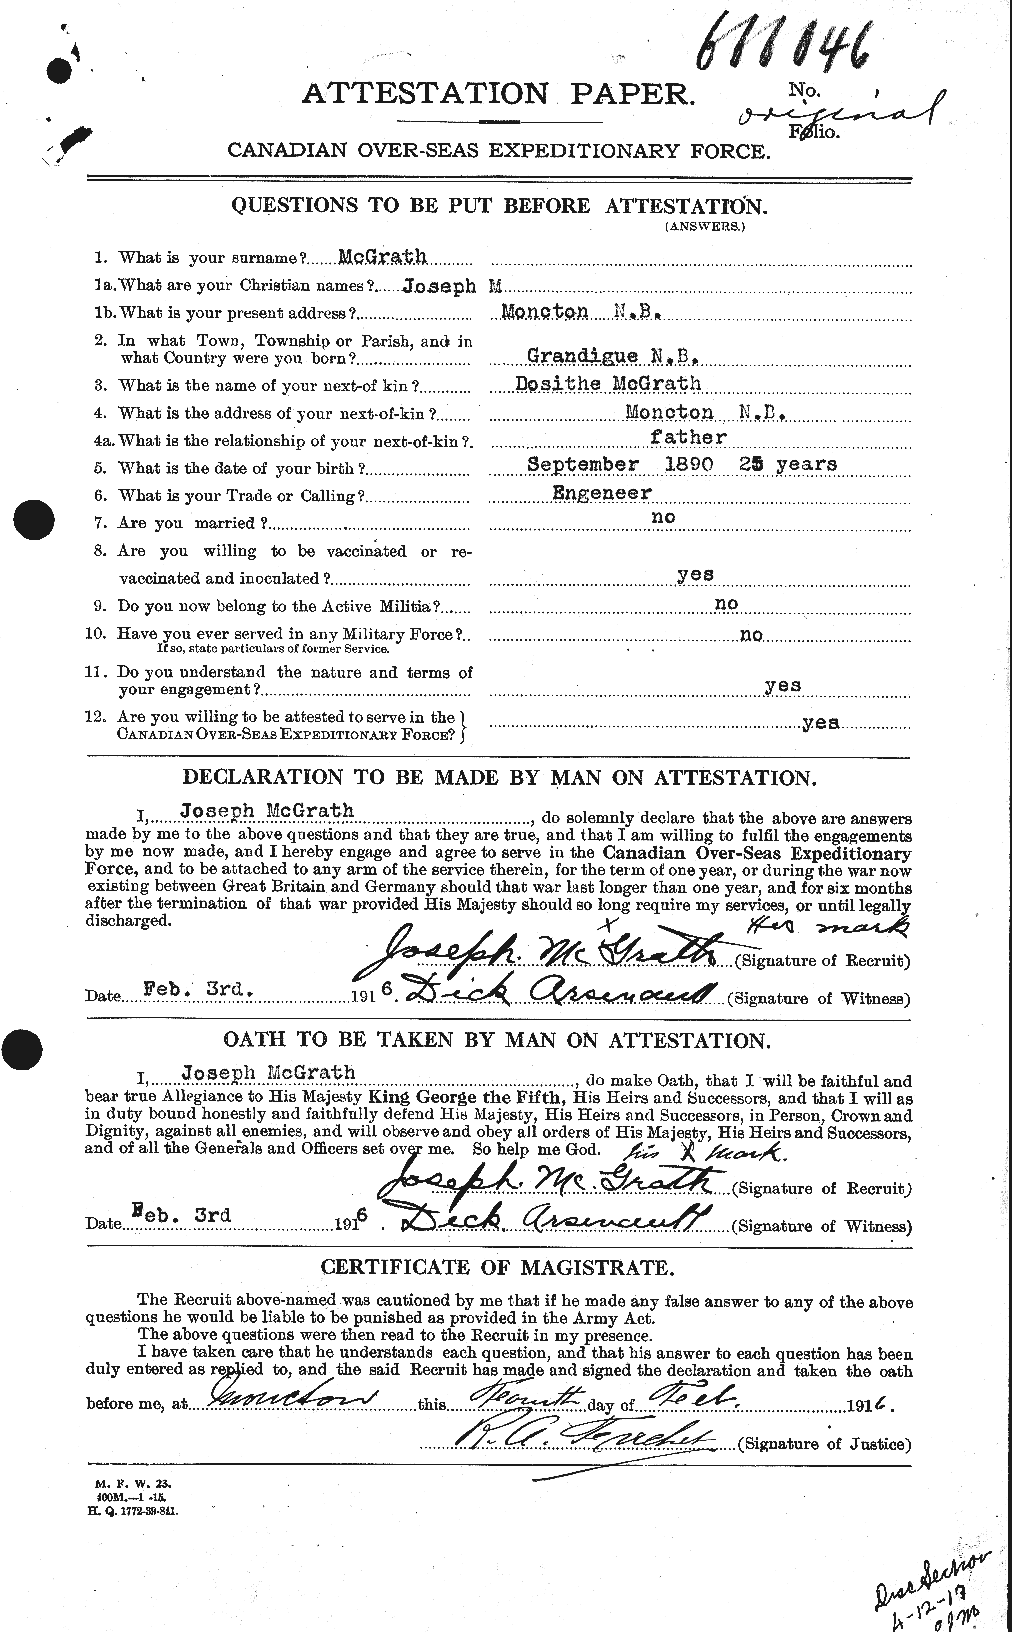 Dossiers du Personnel de la Première Guerre mondiale - CEC 523627a